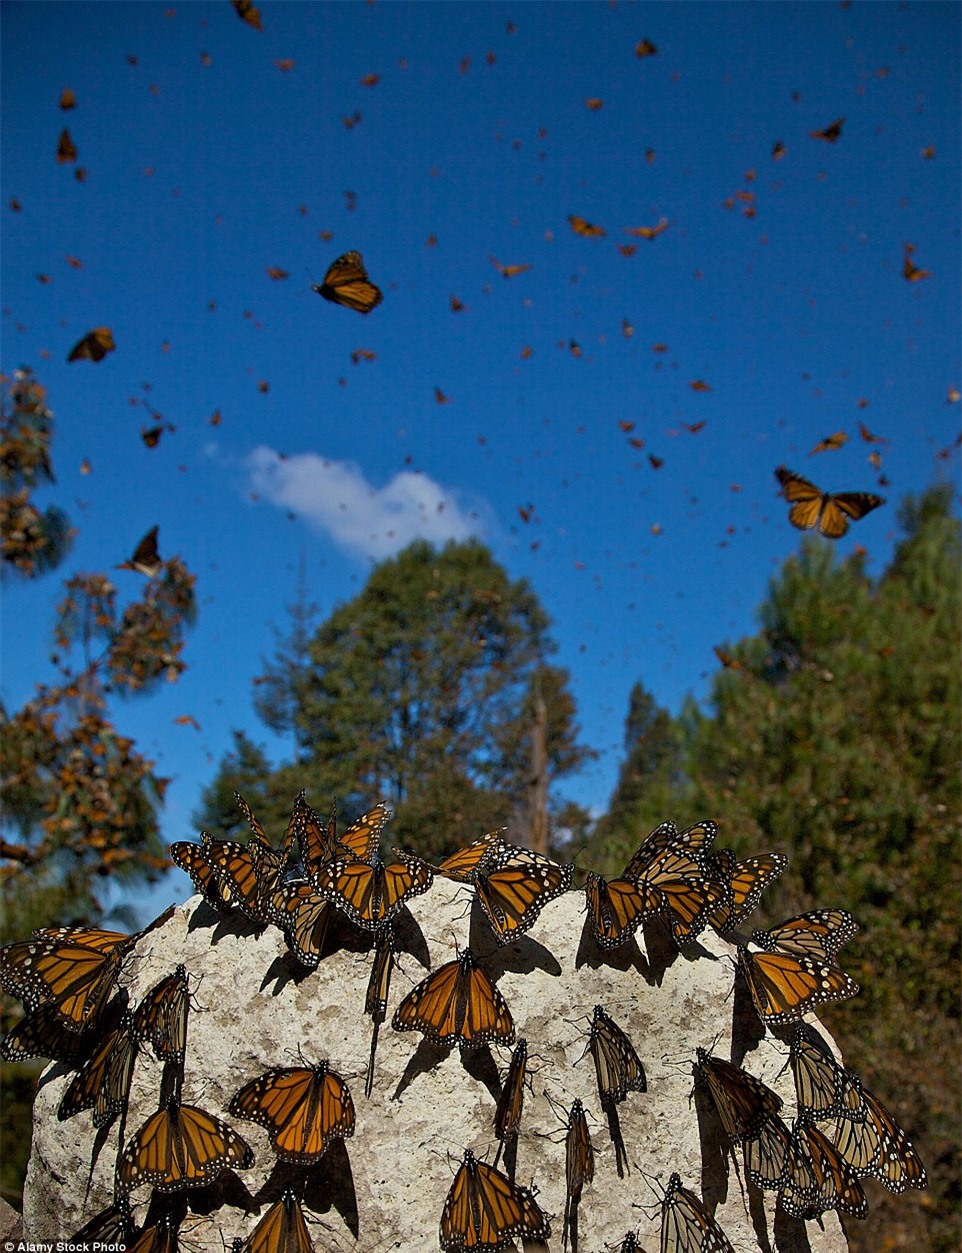 Choáng ngợp trước khung cảnh thần tiên khi bướm vua di cư ở Bắc Mỹ - Ảnh 10.